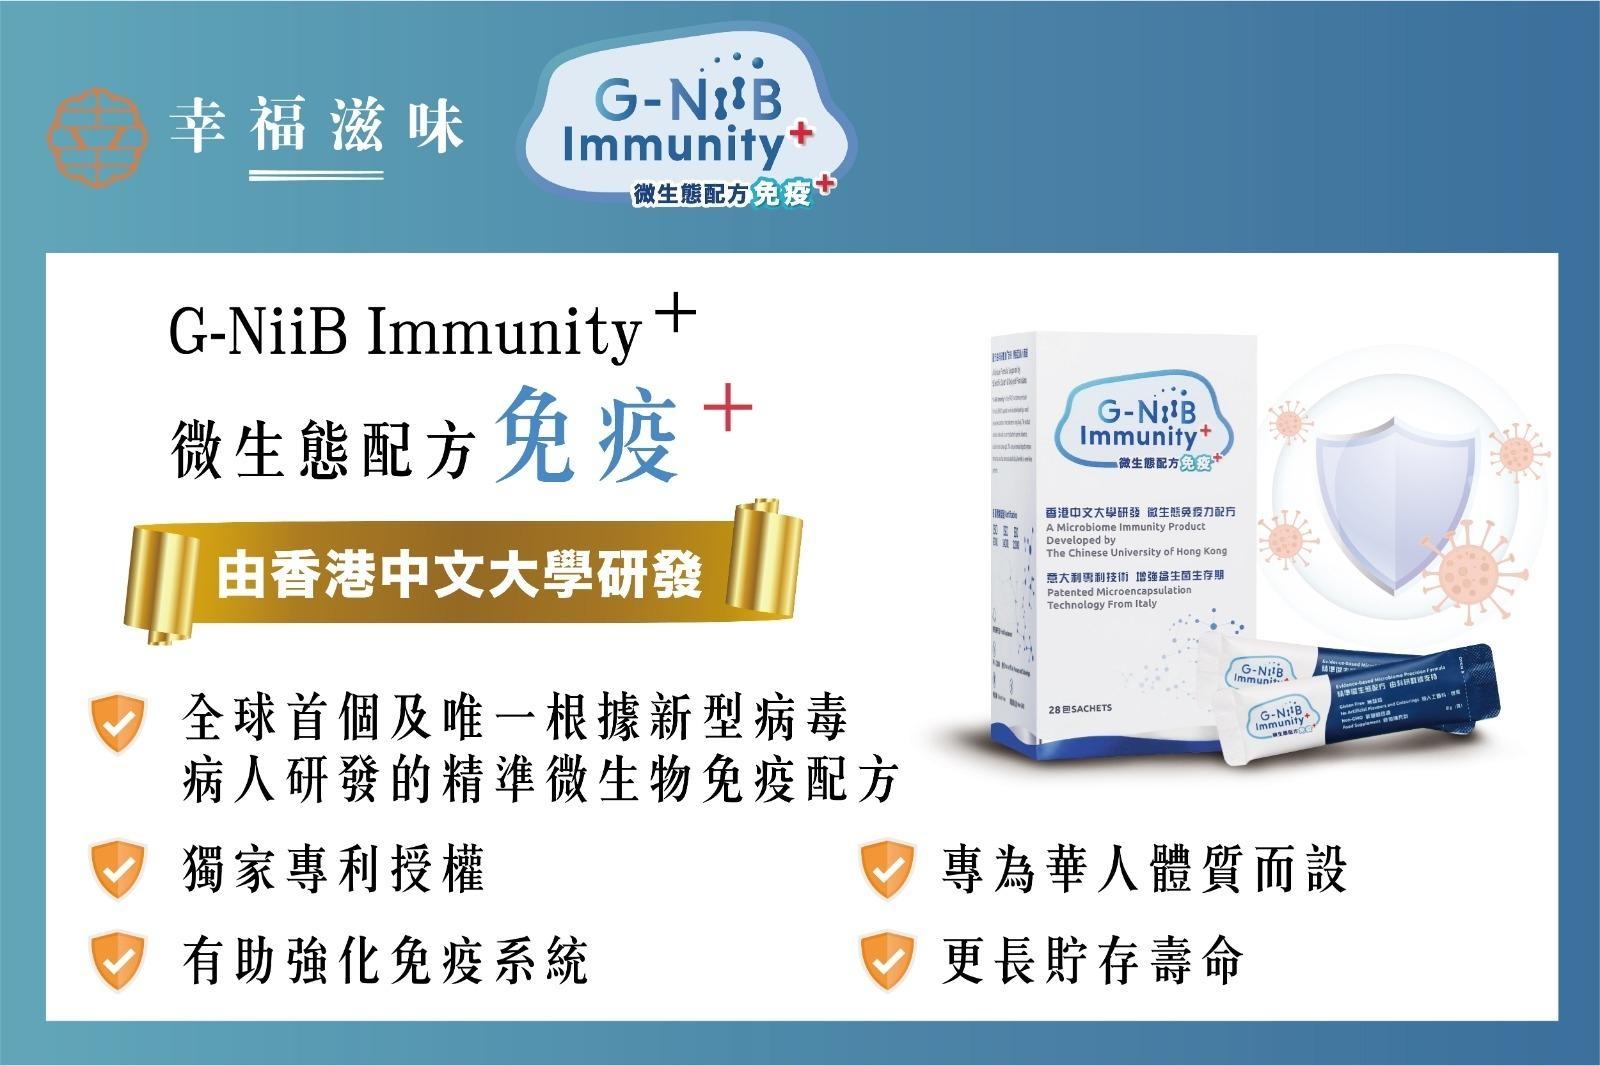 「G-NiiB 免疫Plus 」配方